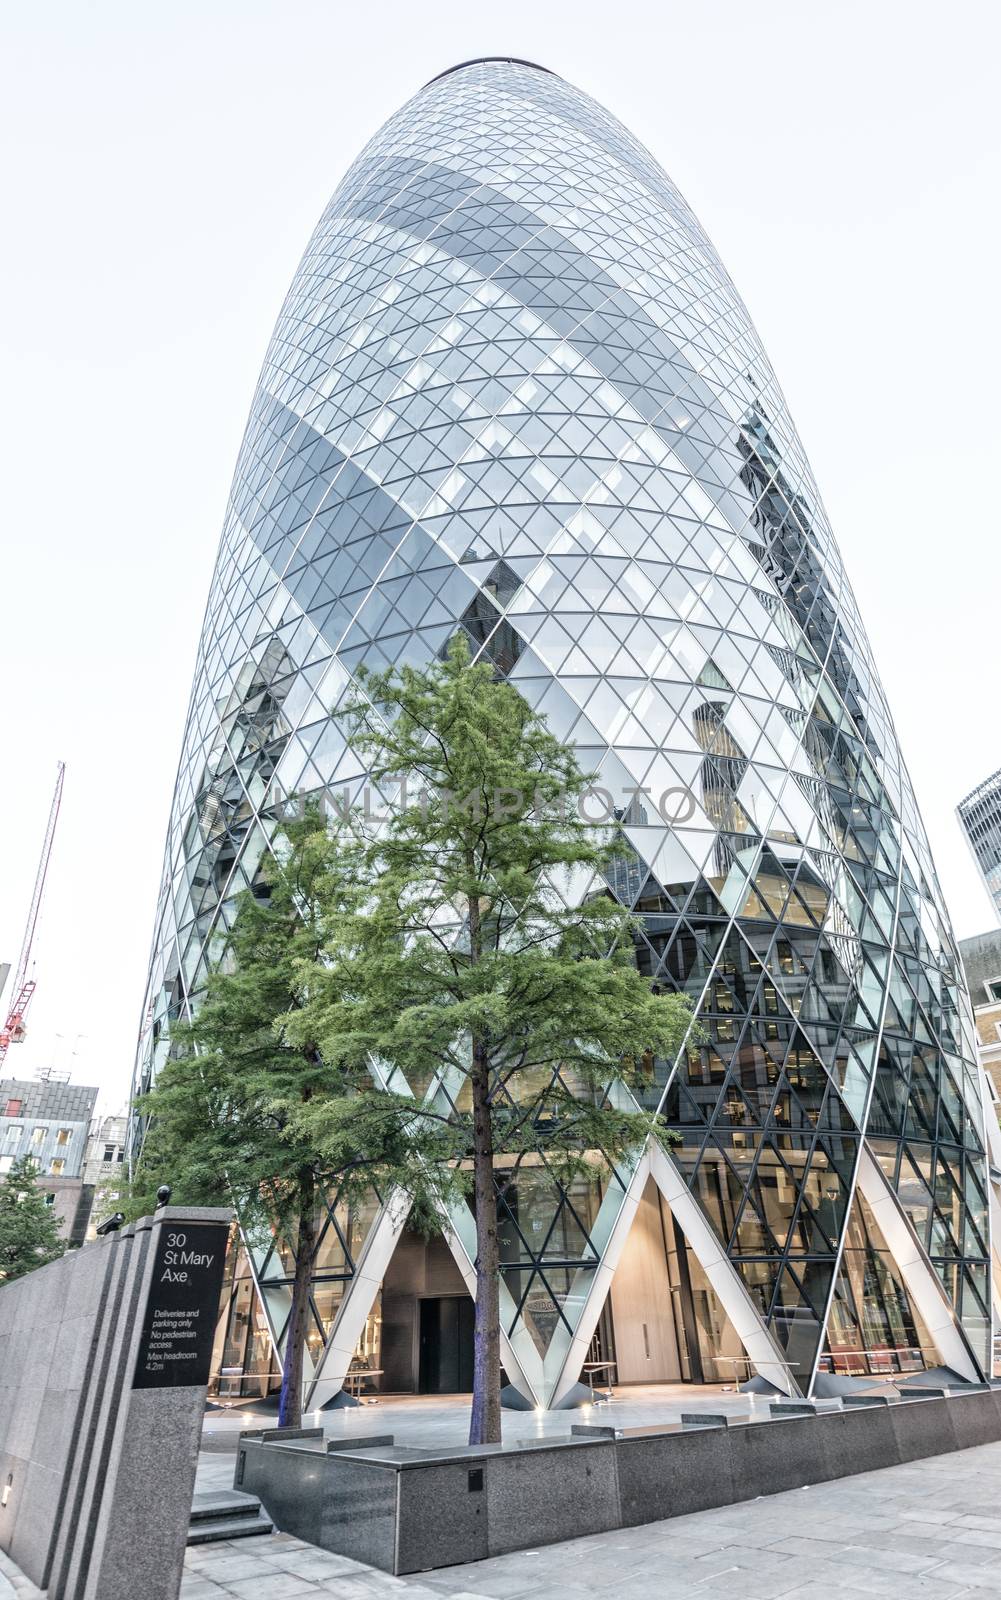 LONDON - JUNE 29: The Gherkin building in London, viewed on June by jovannig